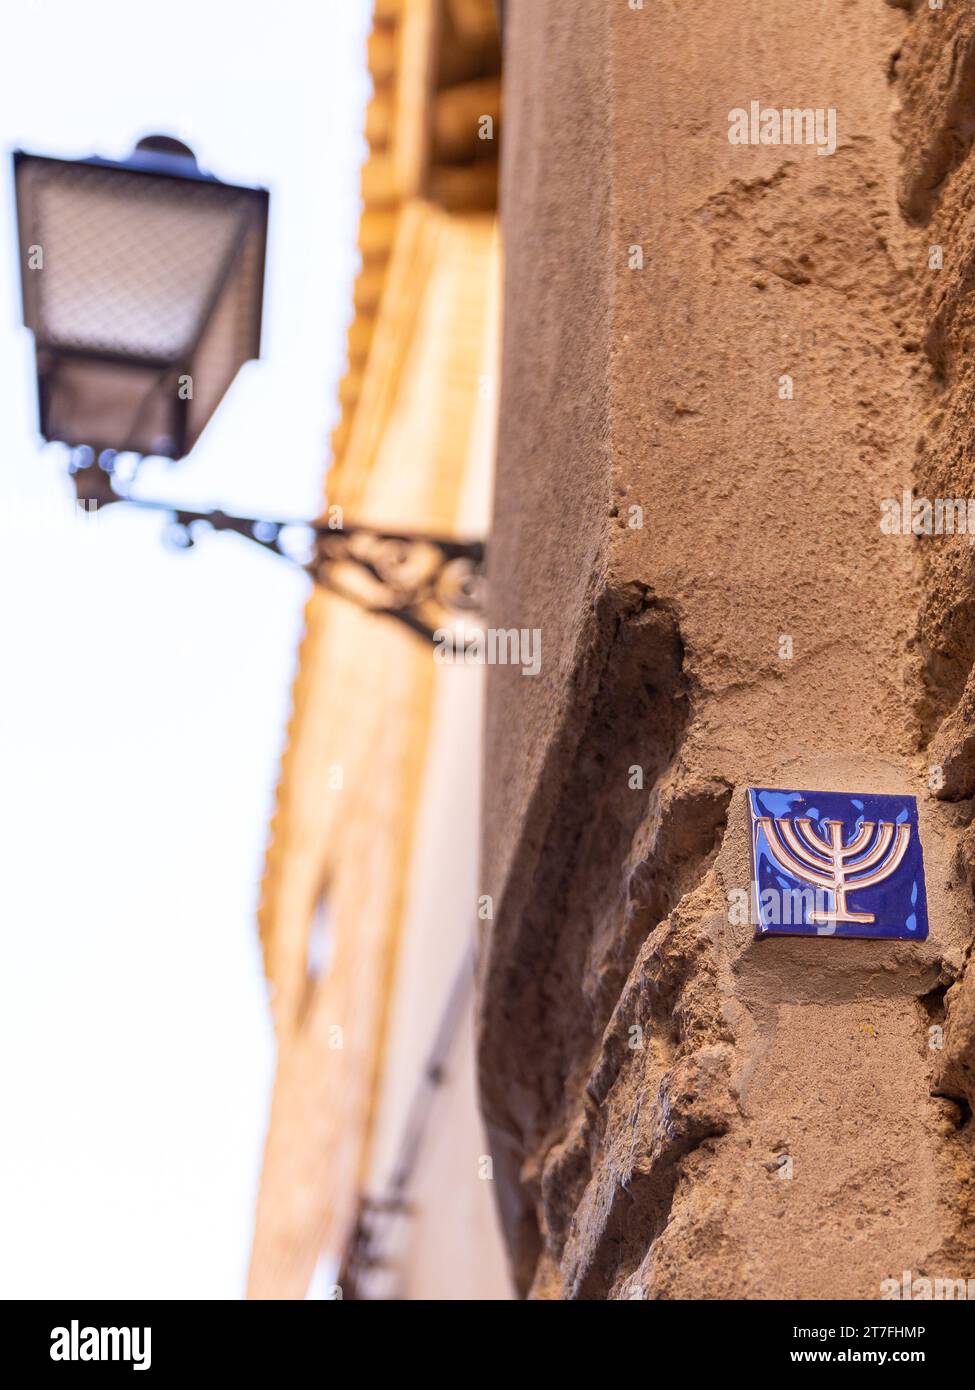 Kleine blaue Fliese mit Menora-Symbol, eingebettet in die Steinfassade im ehemaligen jüdischen Viertel in Toledo, Spanien, Straßenlaterne im alten Stil. Stockfoto